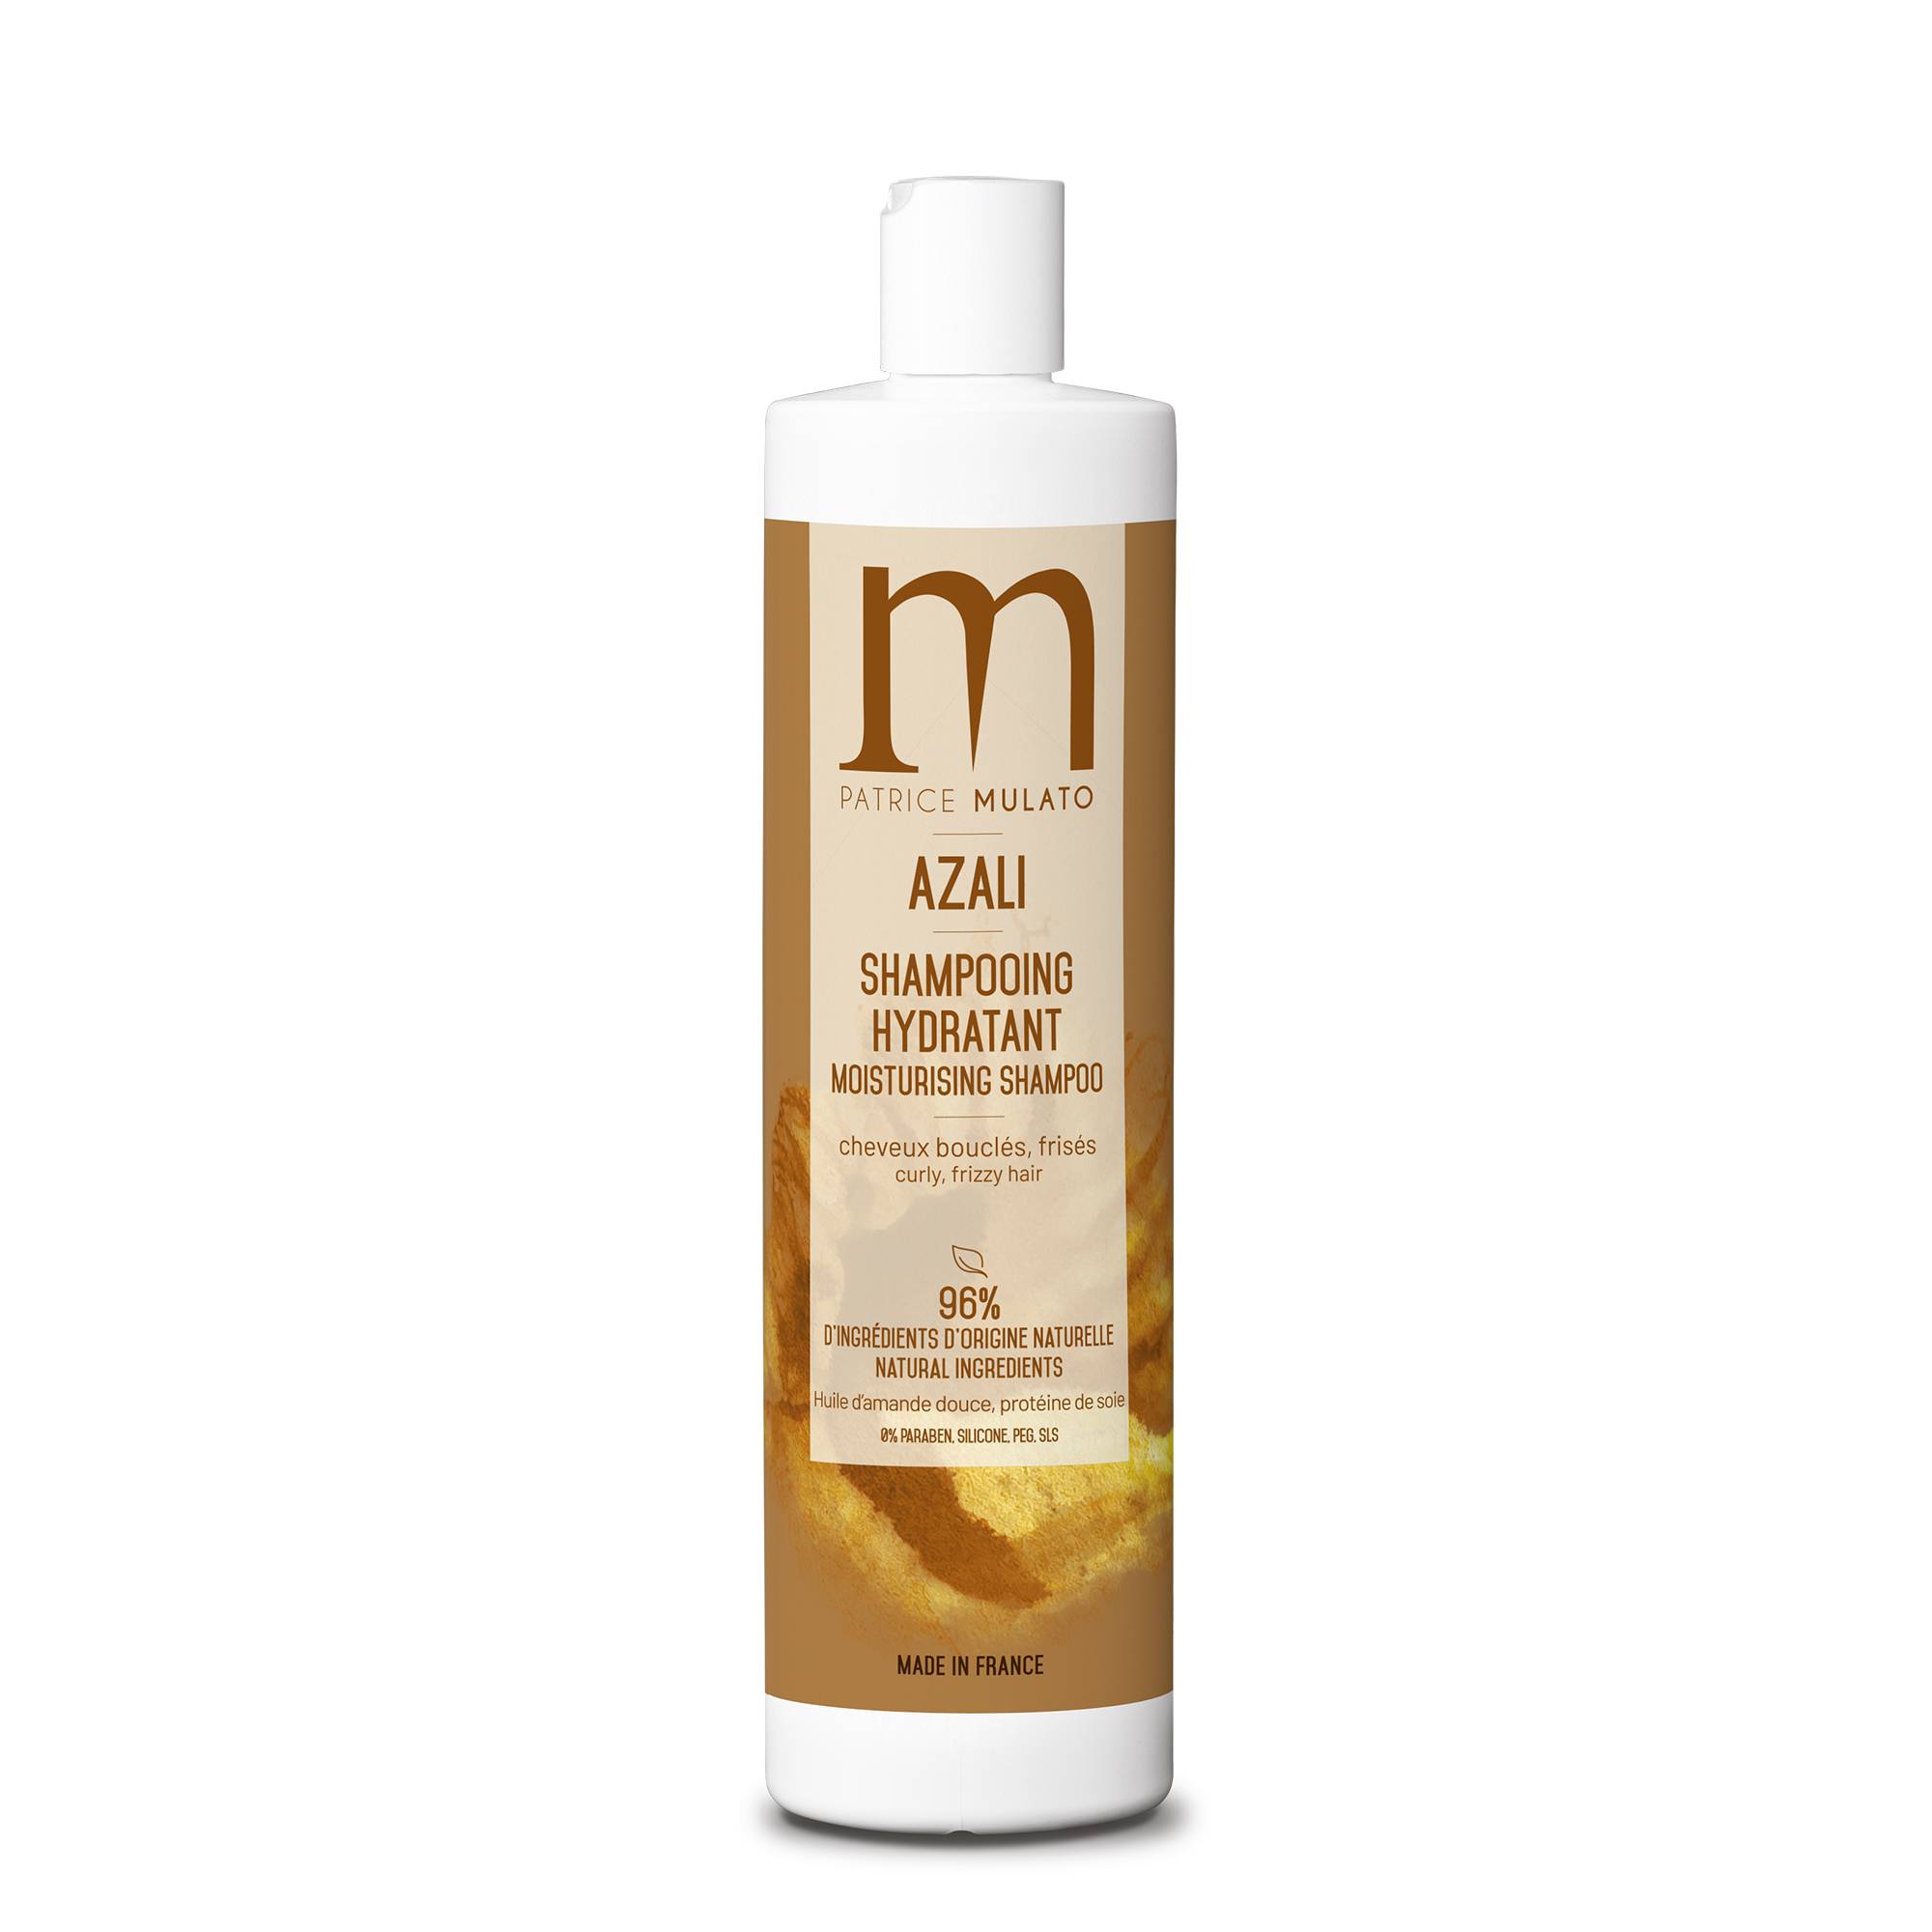 Shampooing hydratant Azali cheveux bouclés et frisés de la marque Mulato Contenance 500ml - 1